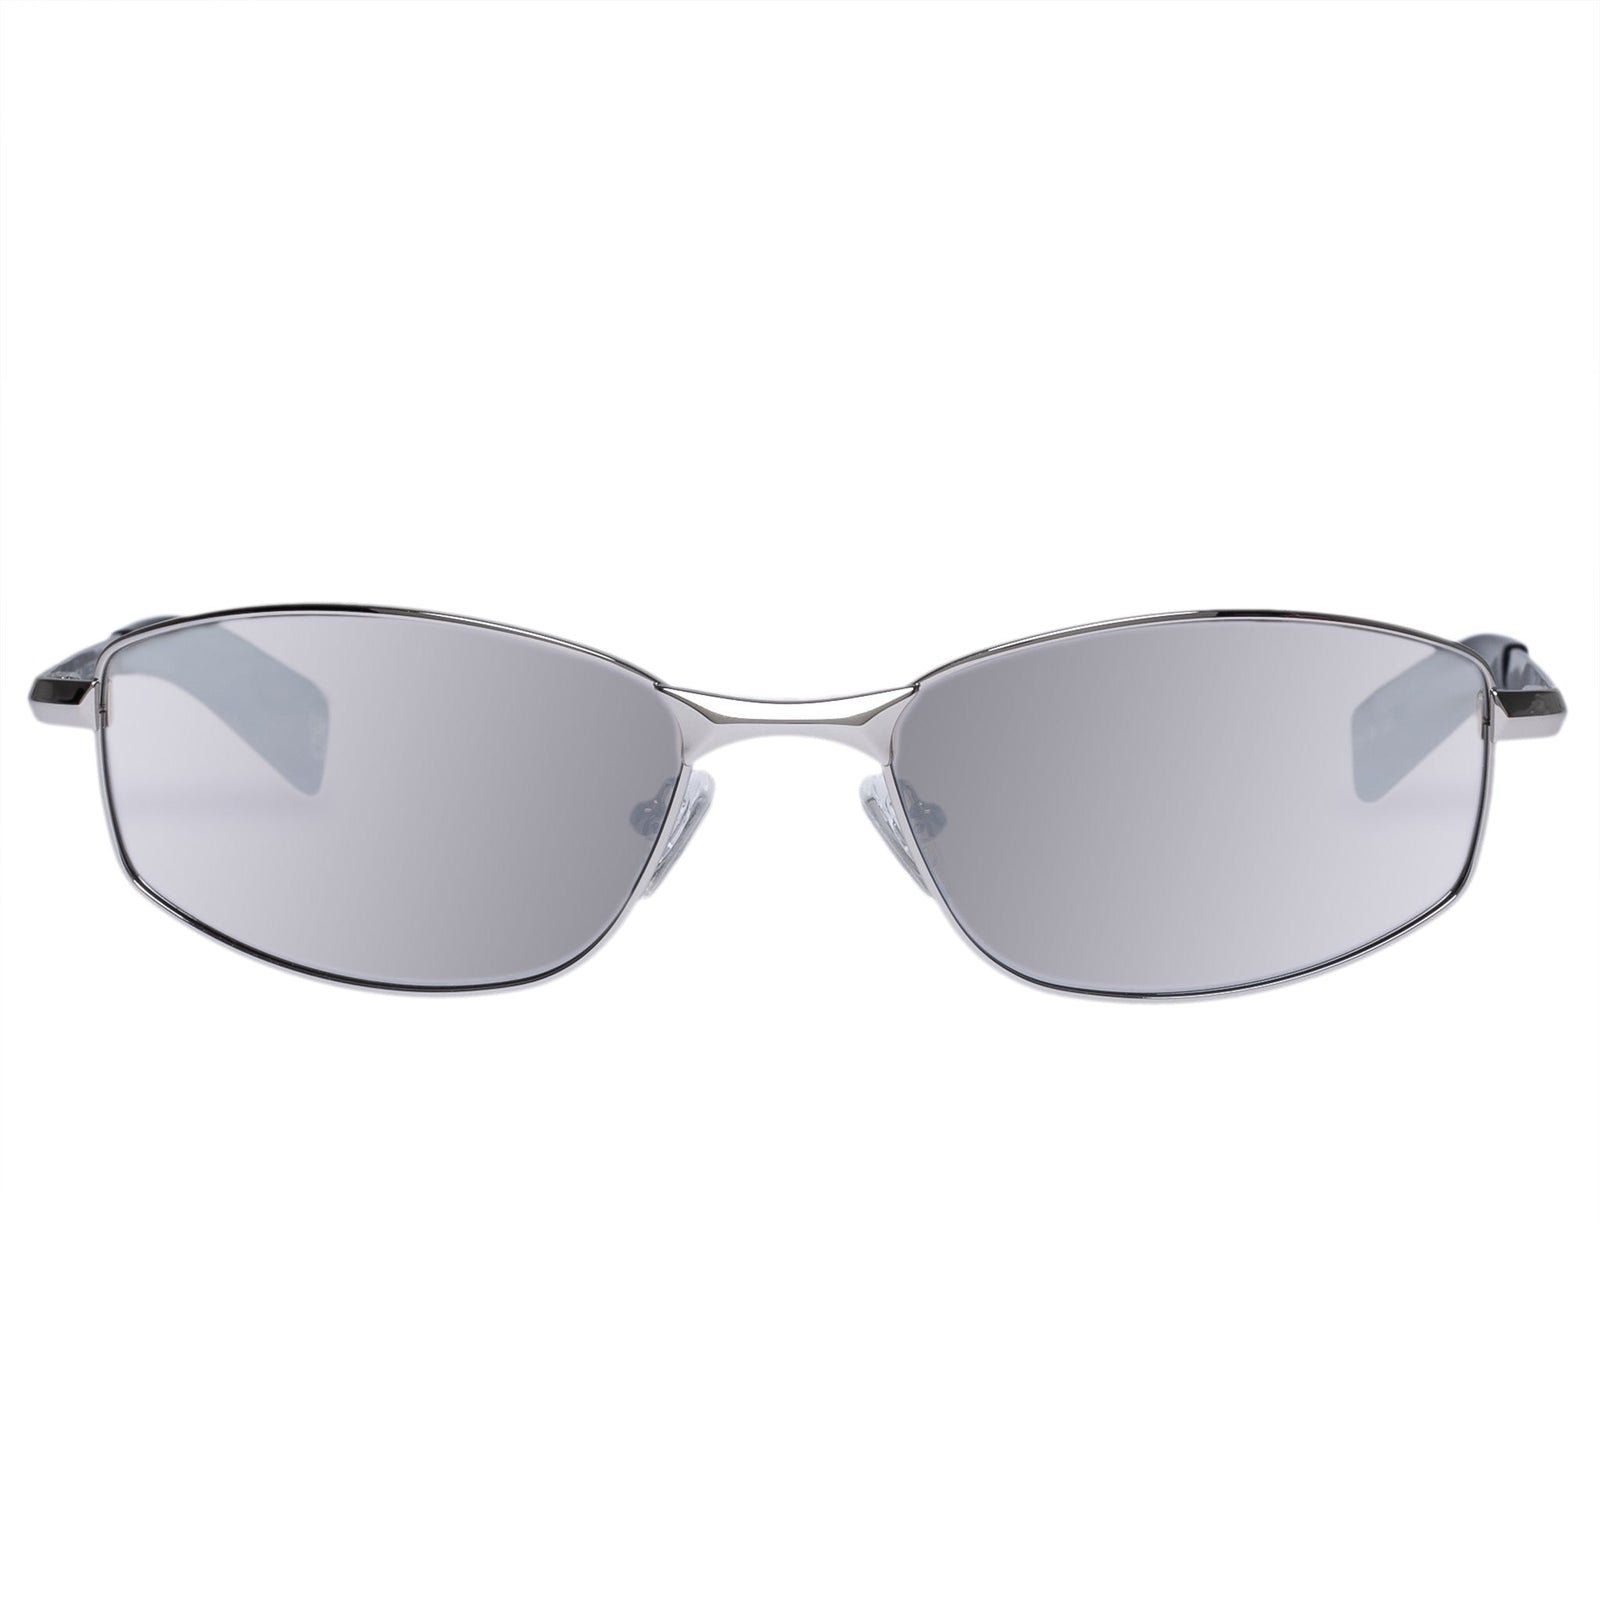 Oakley Windjacket 2.0 sunglasses review - BikeRadar